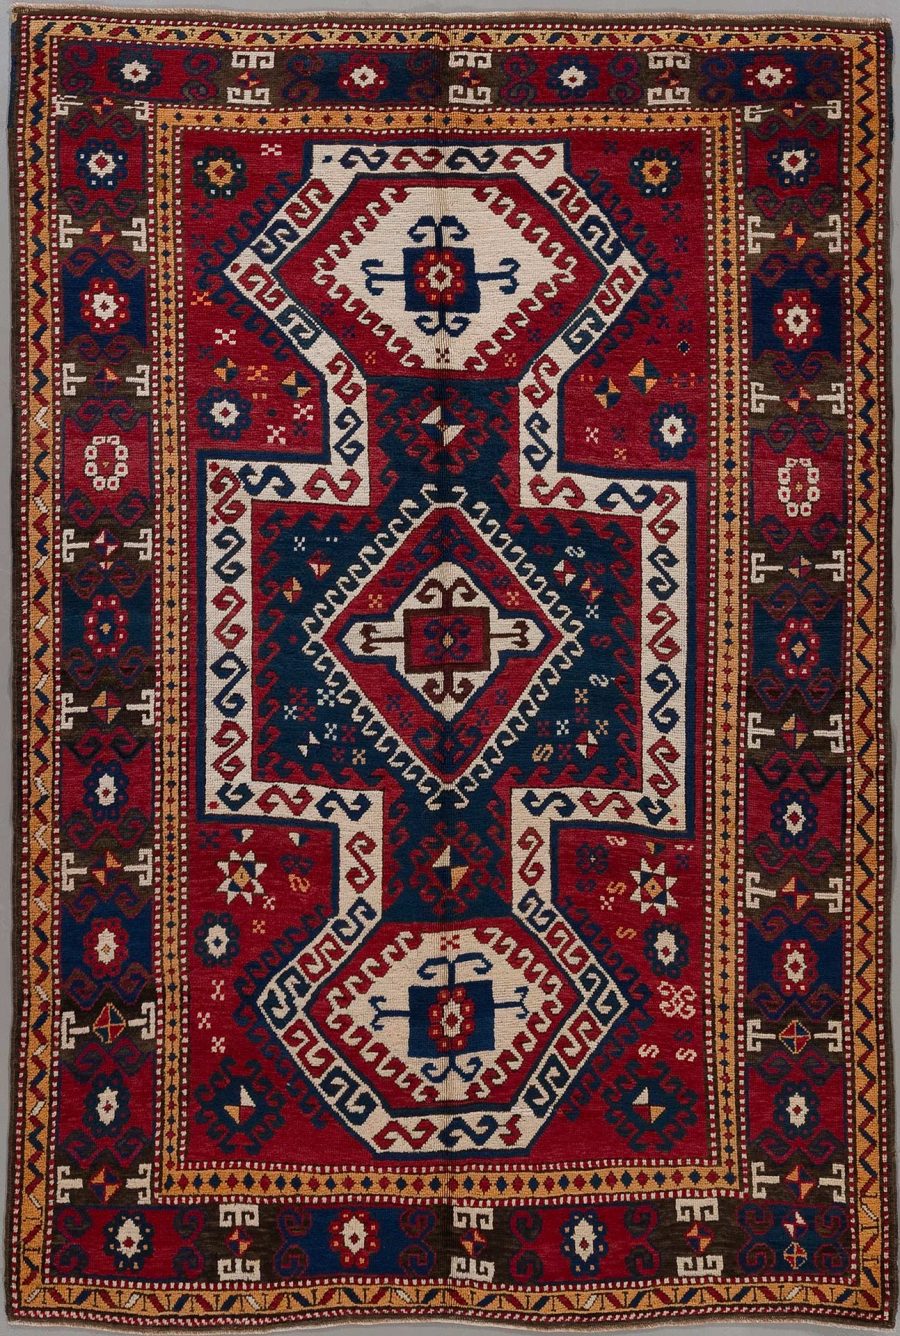 Traditioneller handgeknüpfter Teppich mit komplexem Muster, bestehend aus geometrischen Formen und symbolischen Motiven in Farben von Rot, Blau, Beige und einigen Akzenten in Dunkelblau und Weiß.